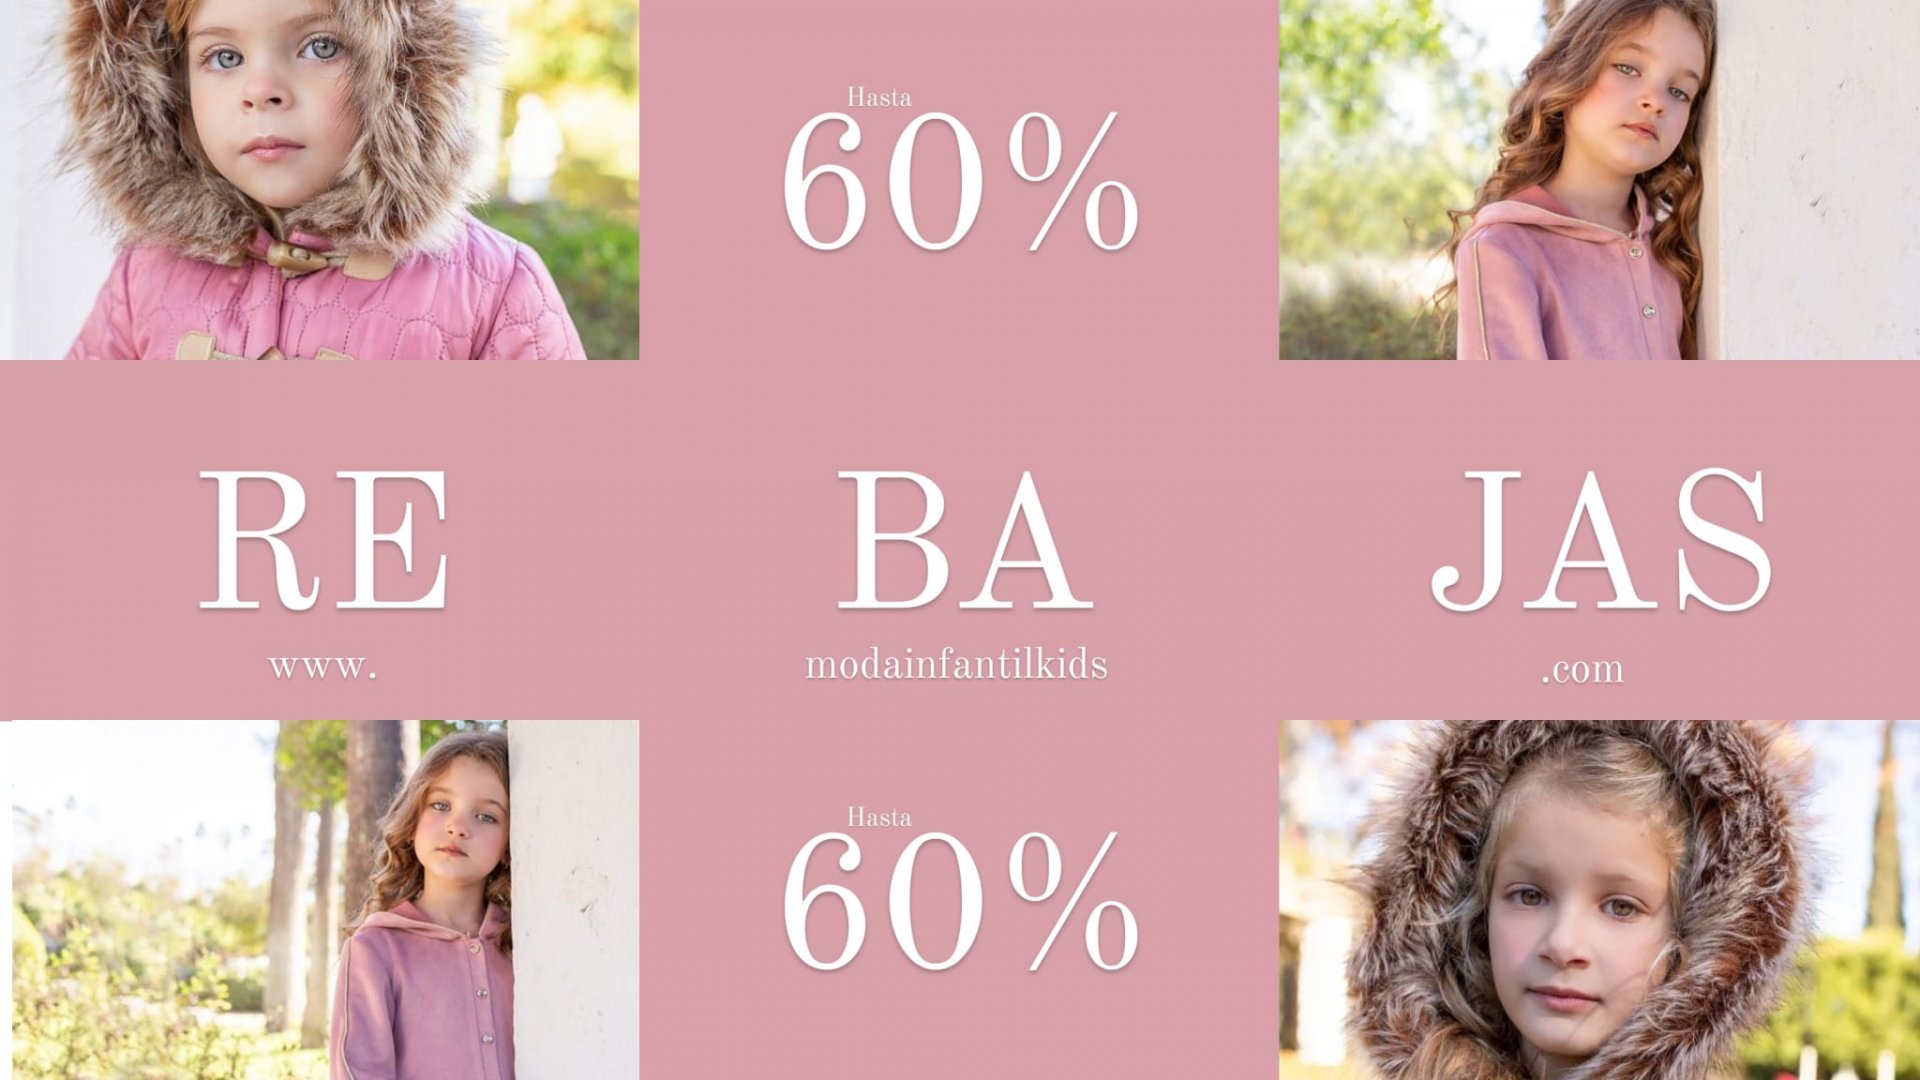 Moda Infantil Kids|Tienda Online Ropa bebe, niñas y niños